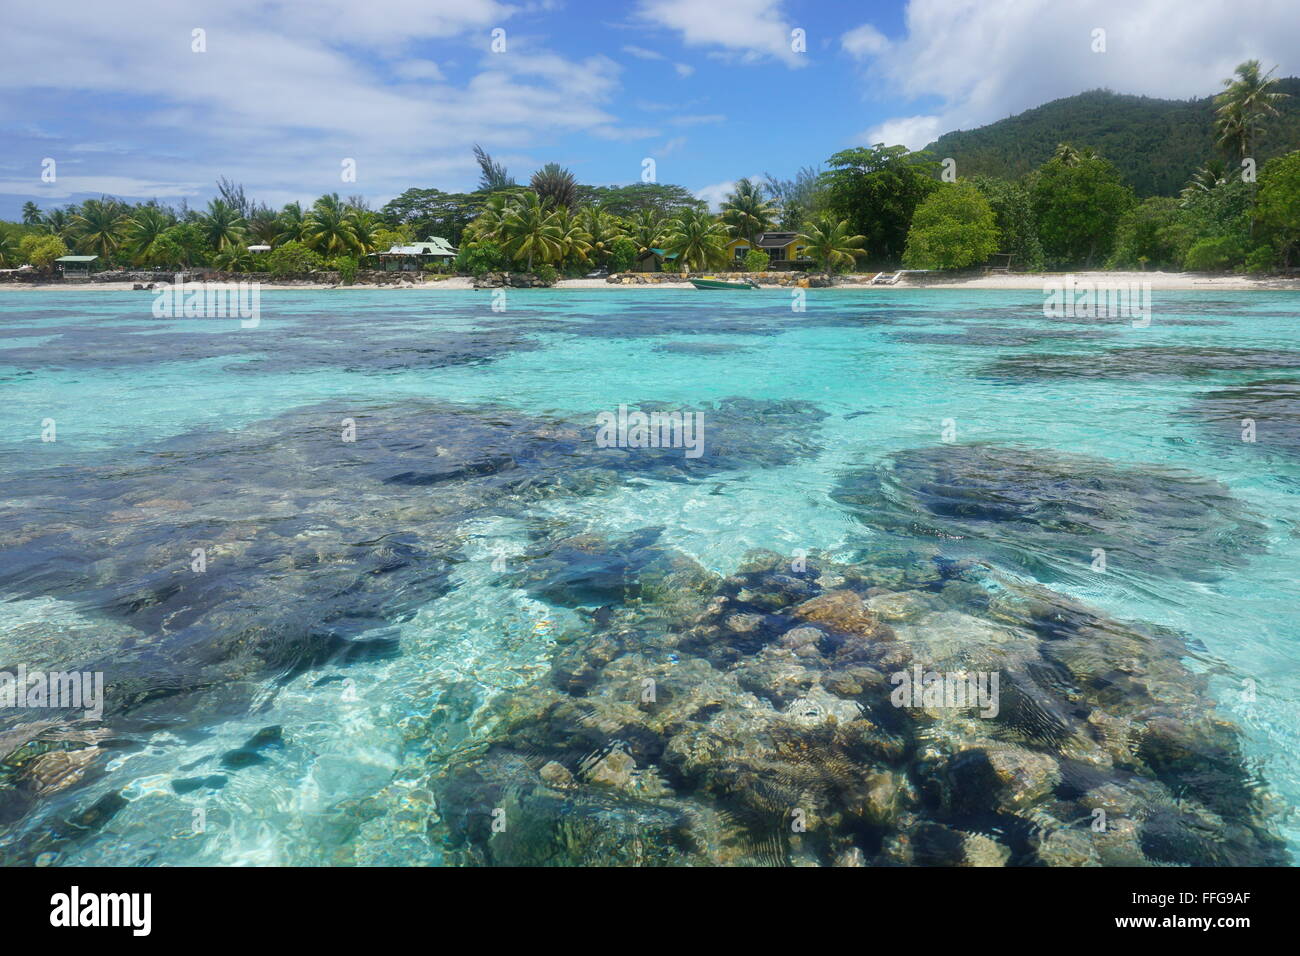 Les coraux en eaux peu profondes vu de dessus la surface avec la côte en arrière-plan, le lagon de l'île de Huahine, Polynésie française Banque D'Images